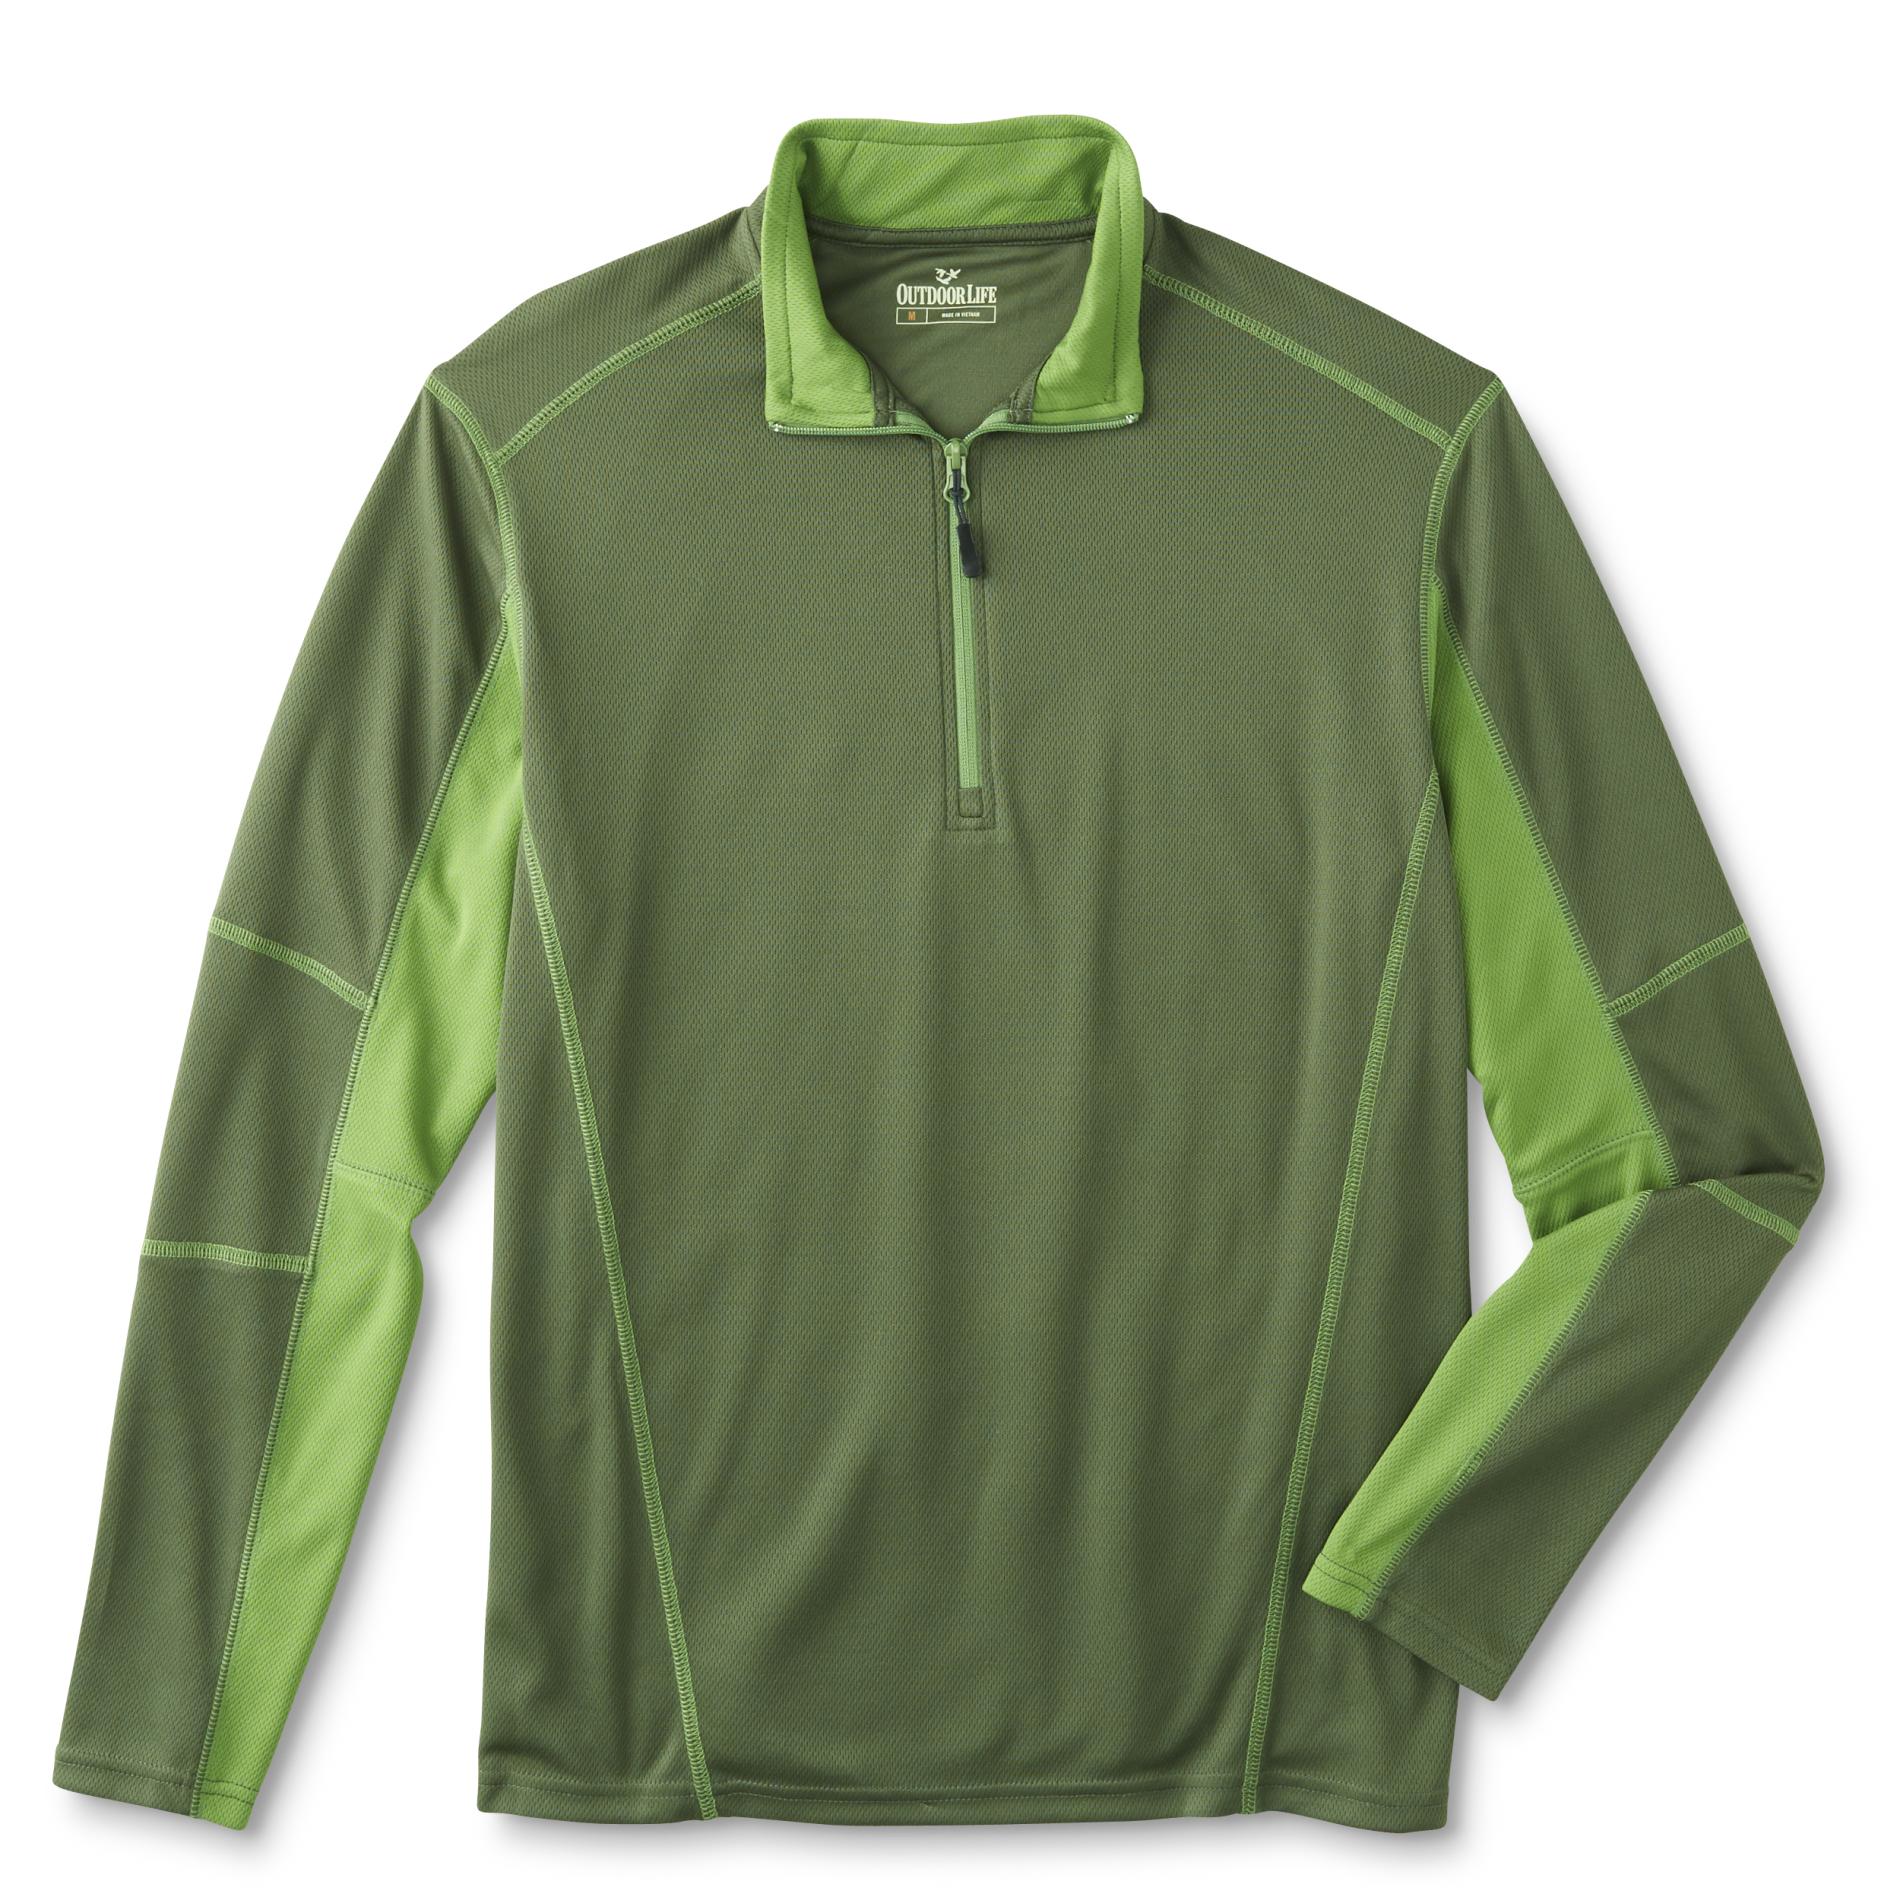 Outdoor Life Men's Half-Zip Athletic Shirt - Colorblock